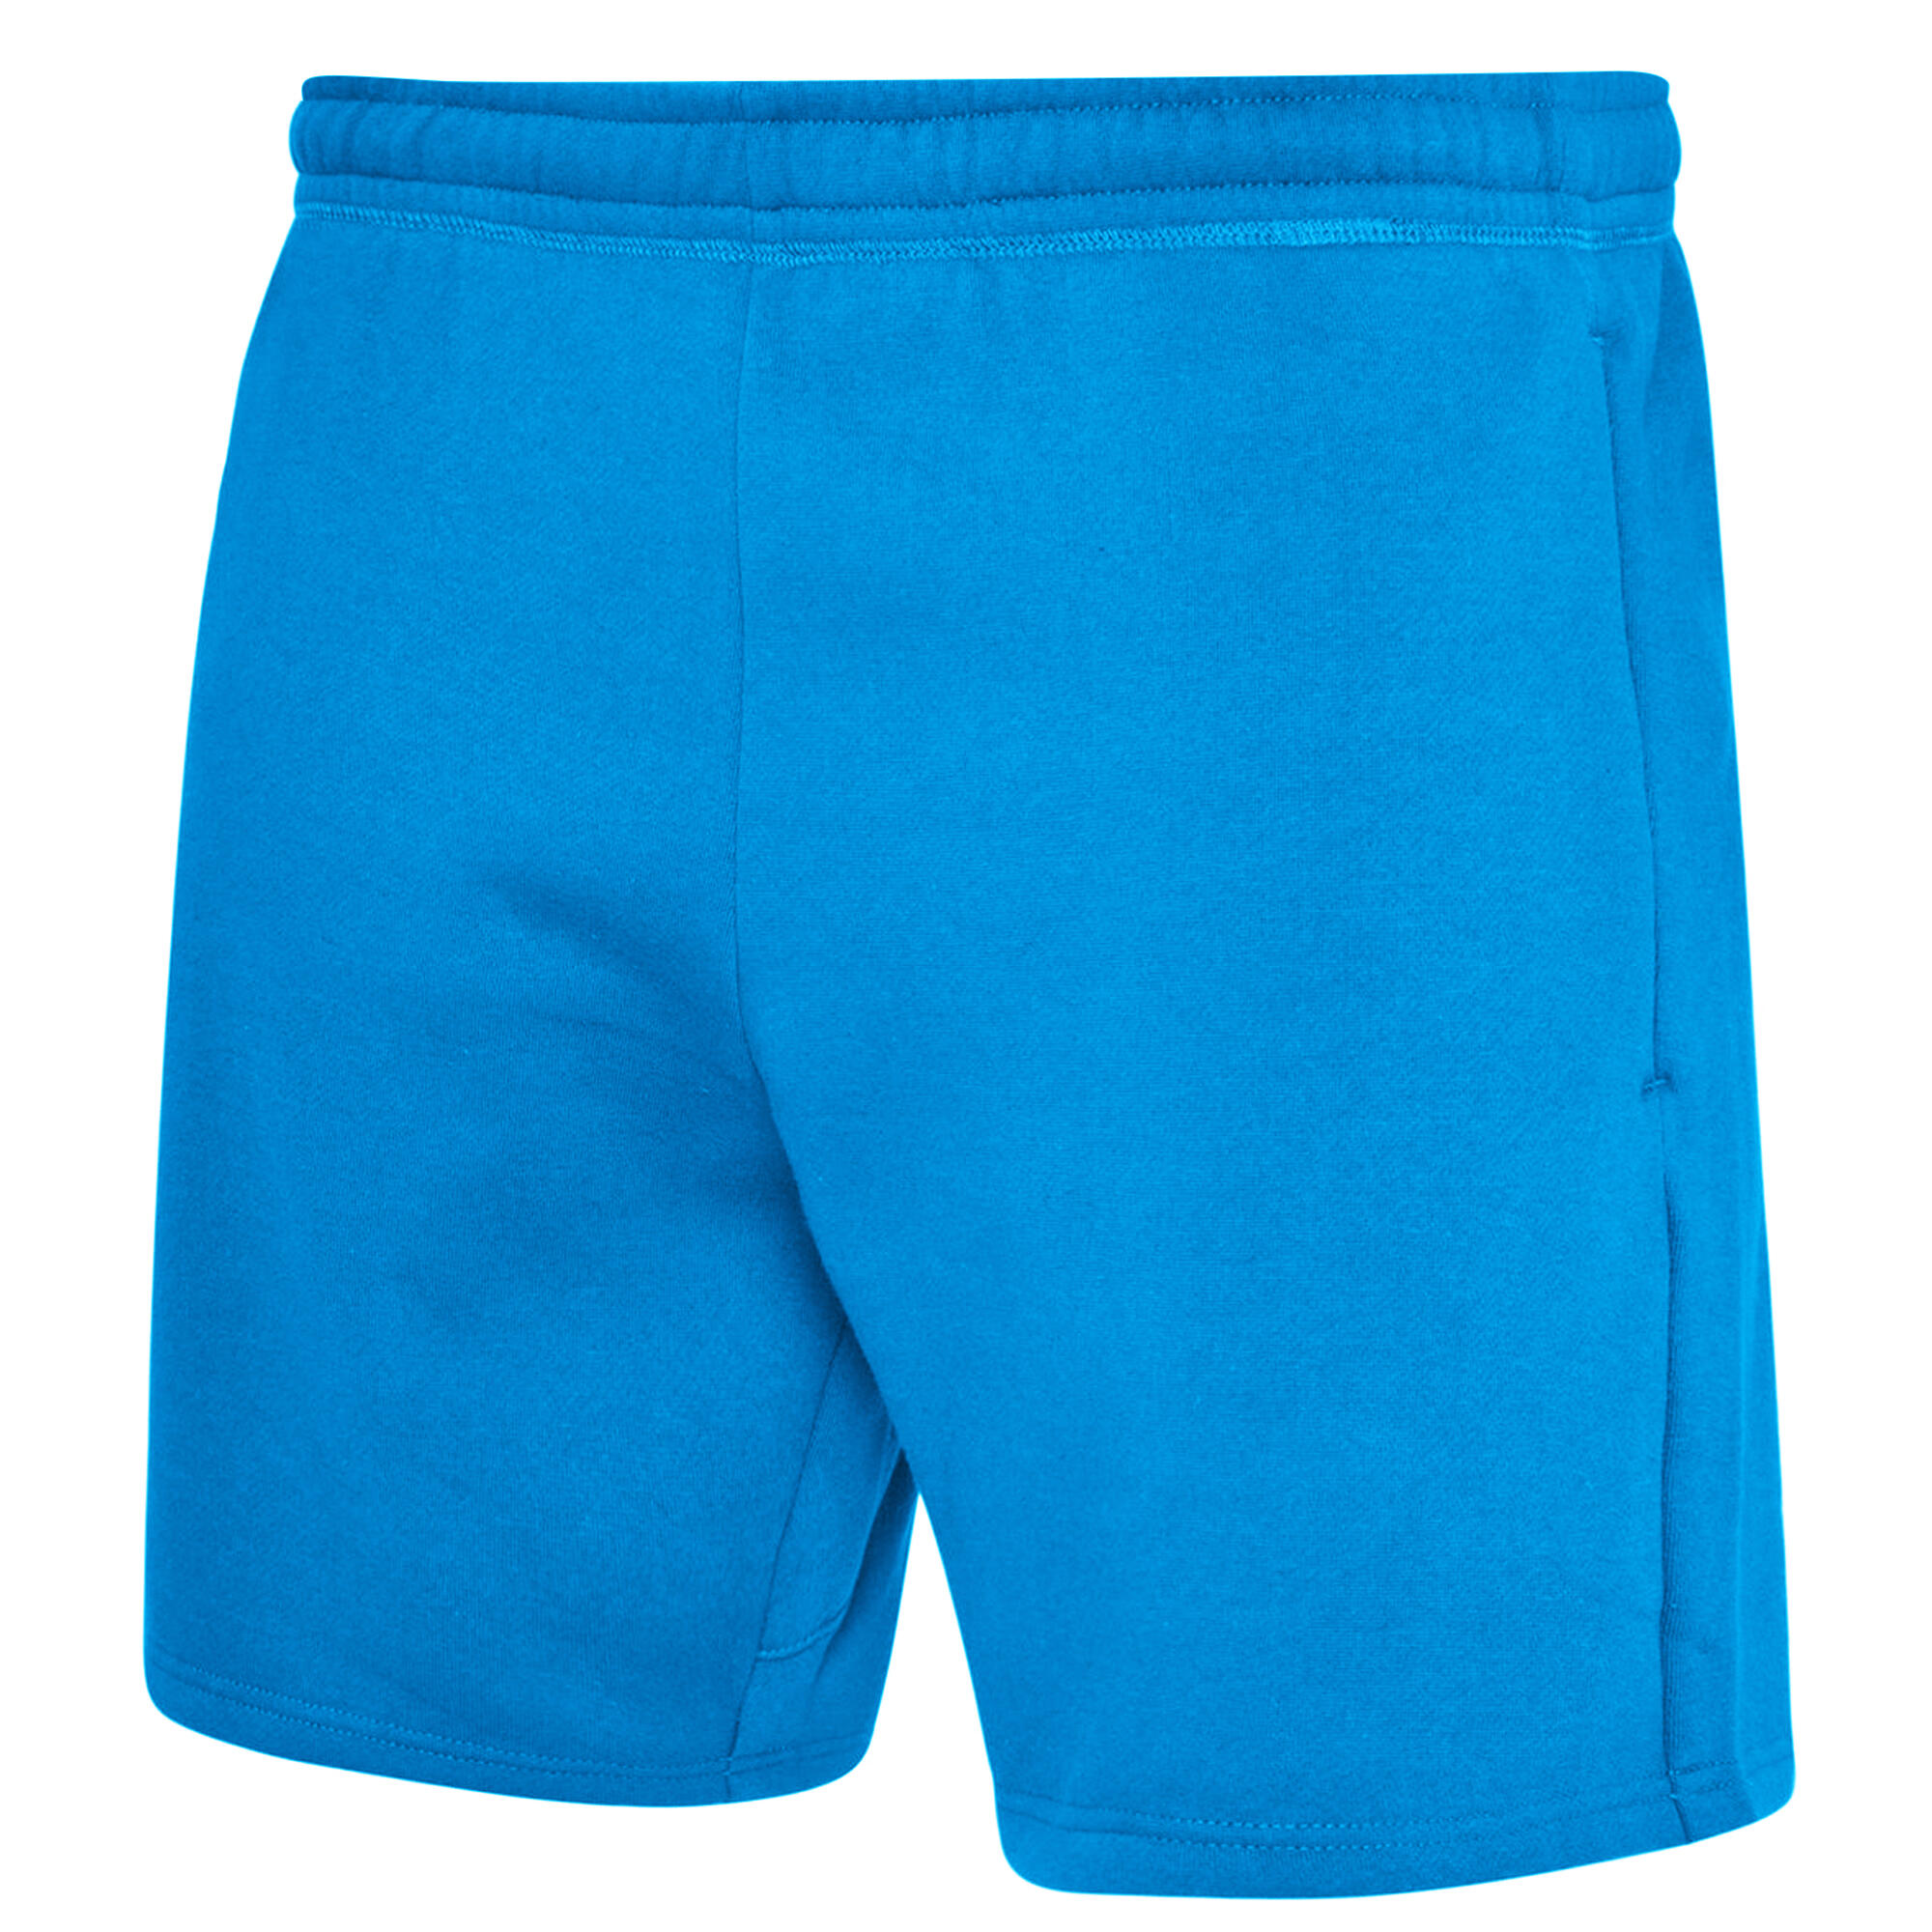 Mens Club Leisure Shorts (Royal Blue/White) 2/4